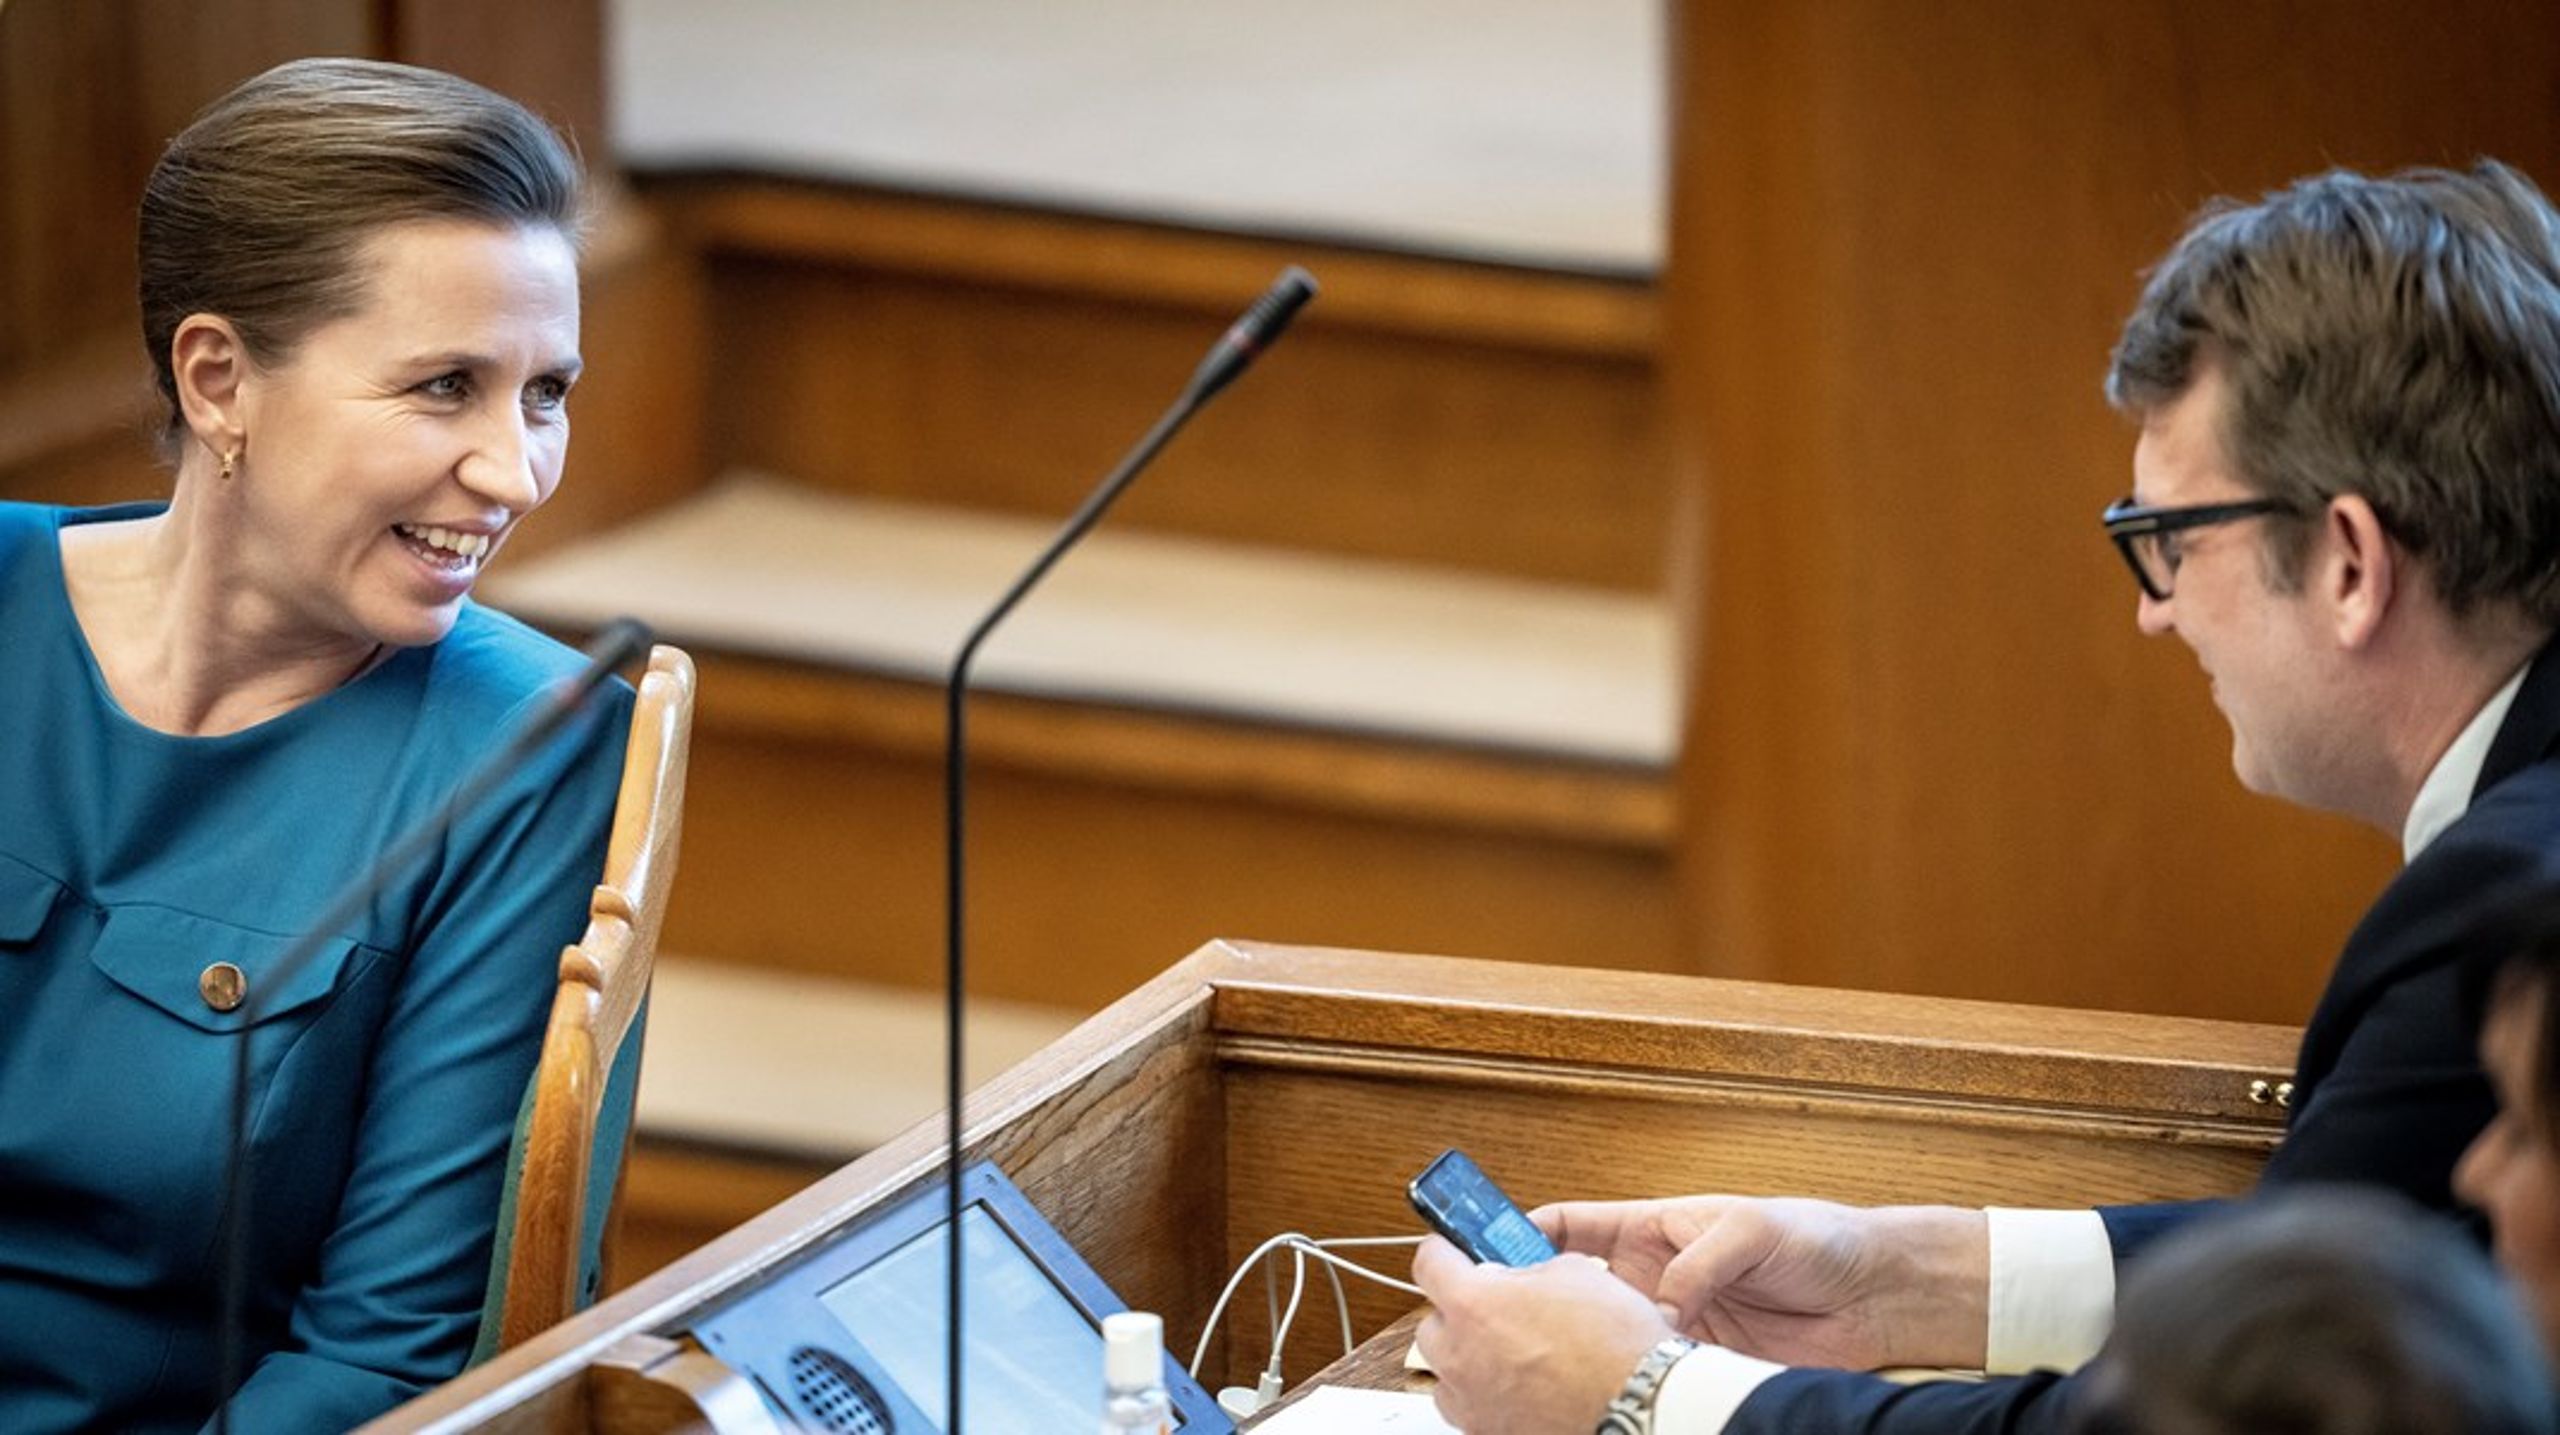 Mette Frederiksen repræsenterede Socialdemokratiet, Troels Lund Poulsen Venstre, da partilederne tirsdag eftermiddag debatterede i Folketingssalen.